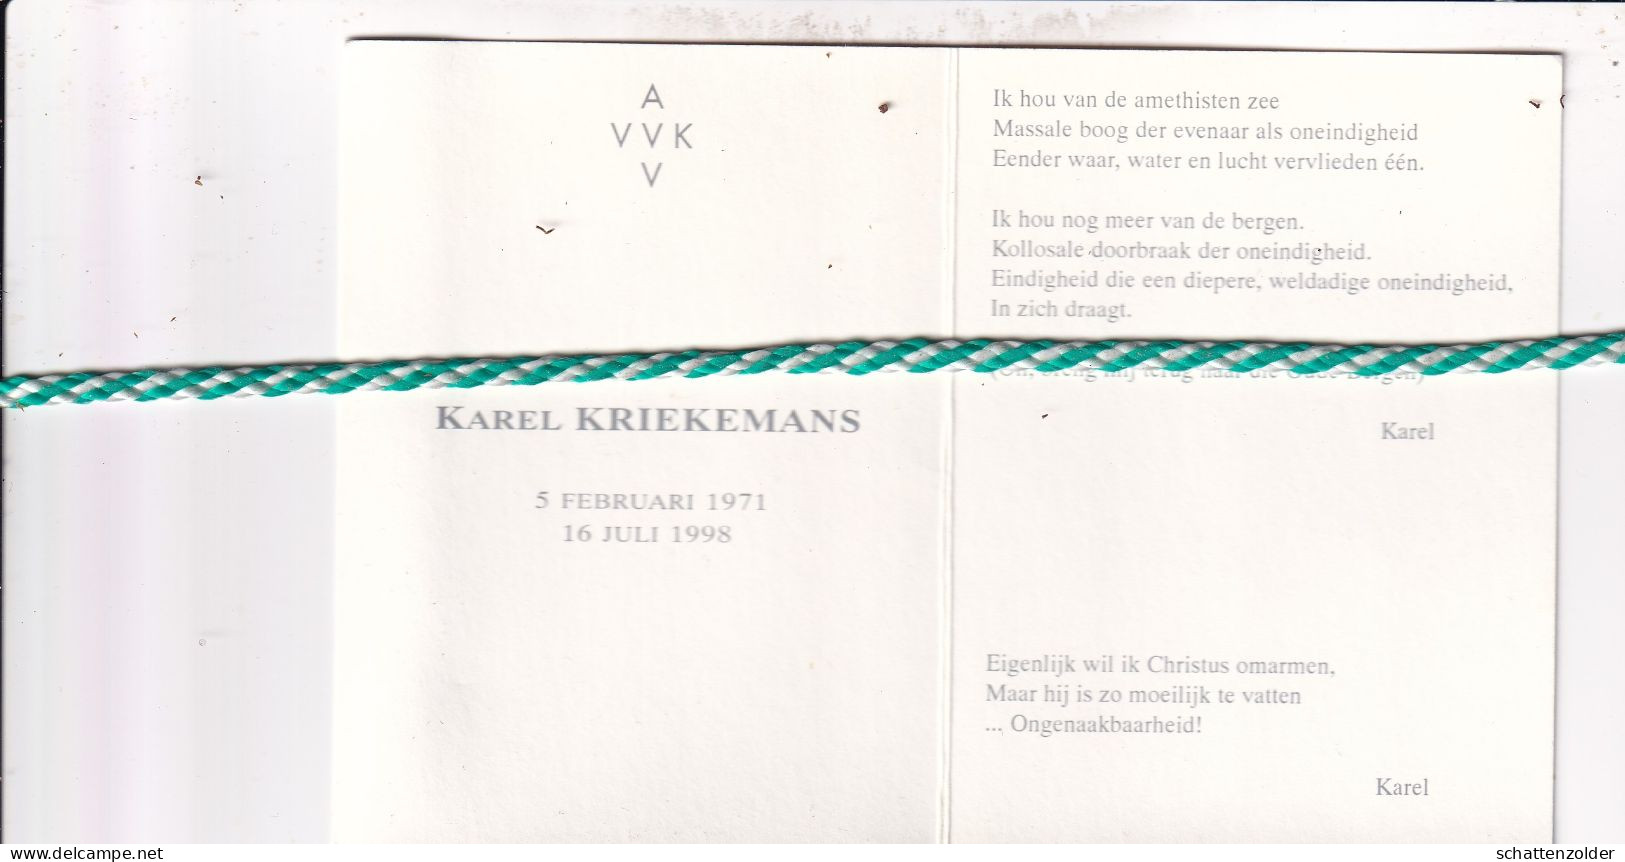 Karel Kriekemans, 1971, 1998. AVV VVK. Foto - Overlijden